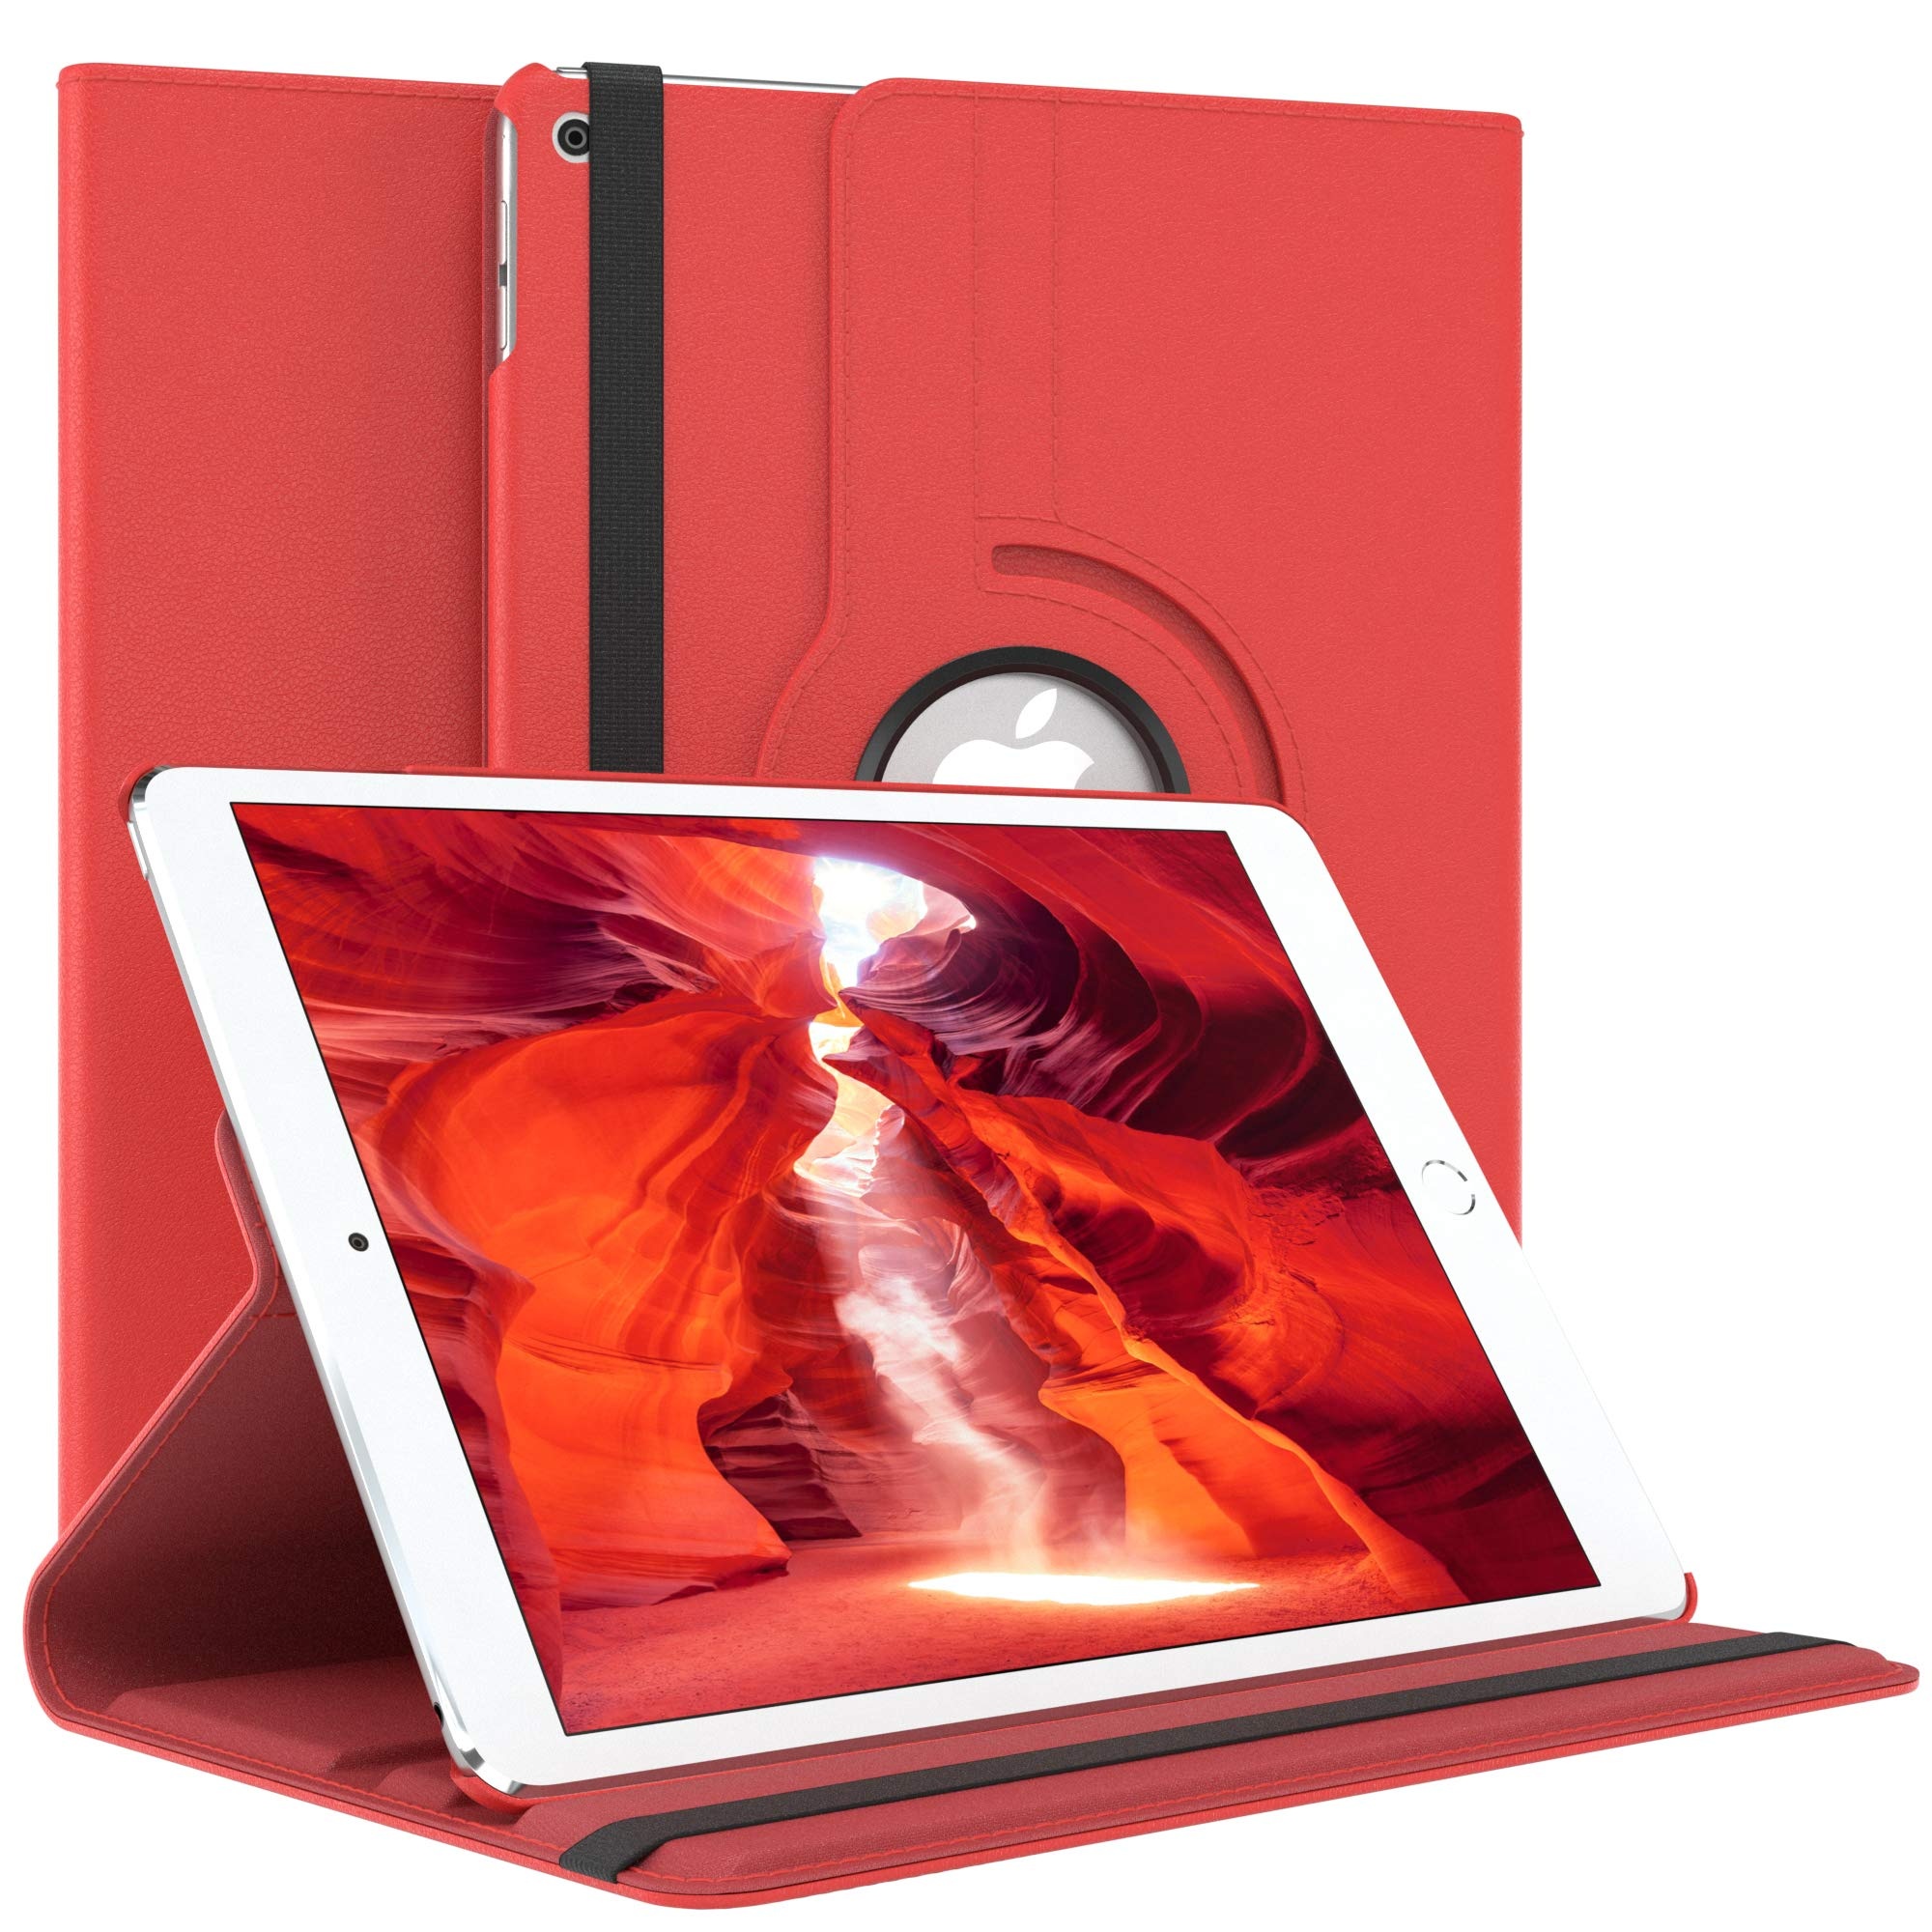 EAZY CASE - Tablet Hülle für iPad Air 2. Generation (2014) Schutzhülle 9.7 Zoll Smart Cover Tablet Case Rotationcase zum Aufstellen Klapphülle 360° drehbar mit Standfunktion Tasche Kunstleder Rot